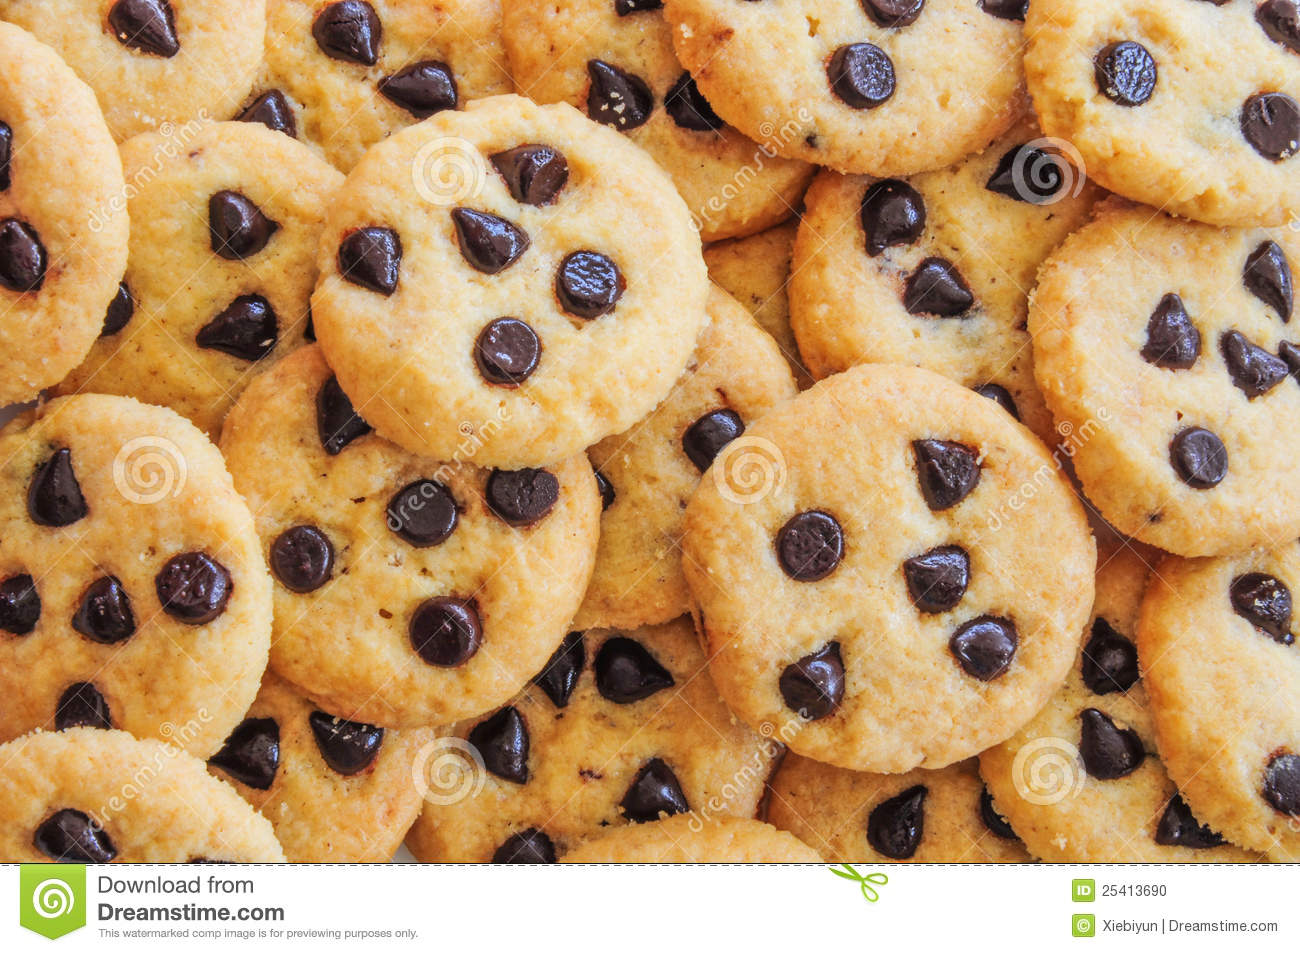 sfondo di biscotti,cibo,biscotti e crackers,piatto,biscotto al cioccolato,cottura al forno